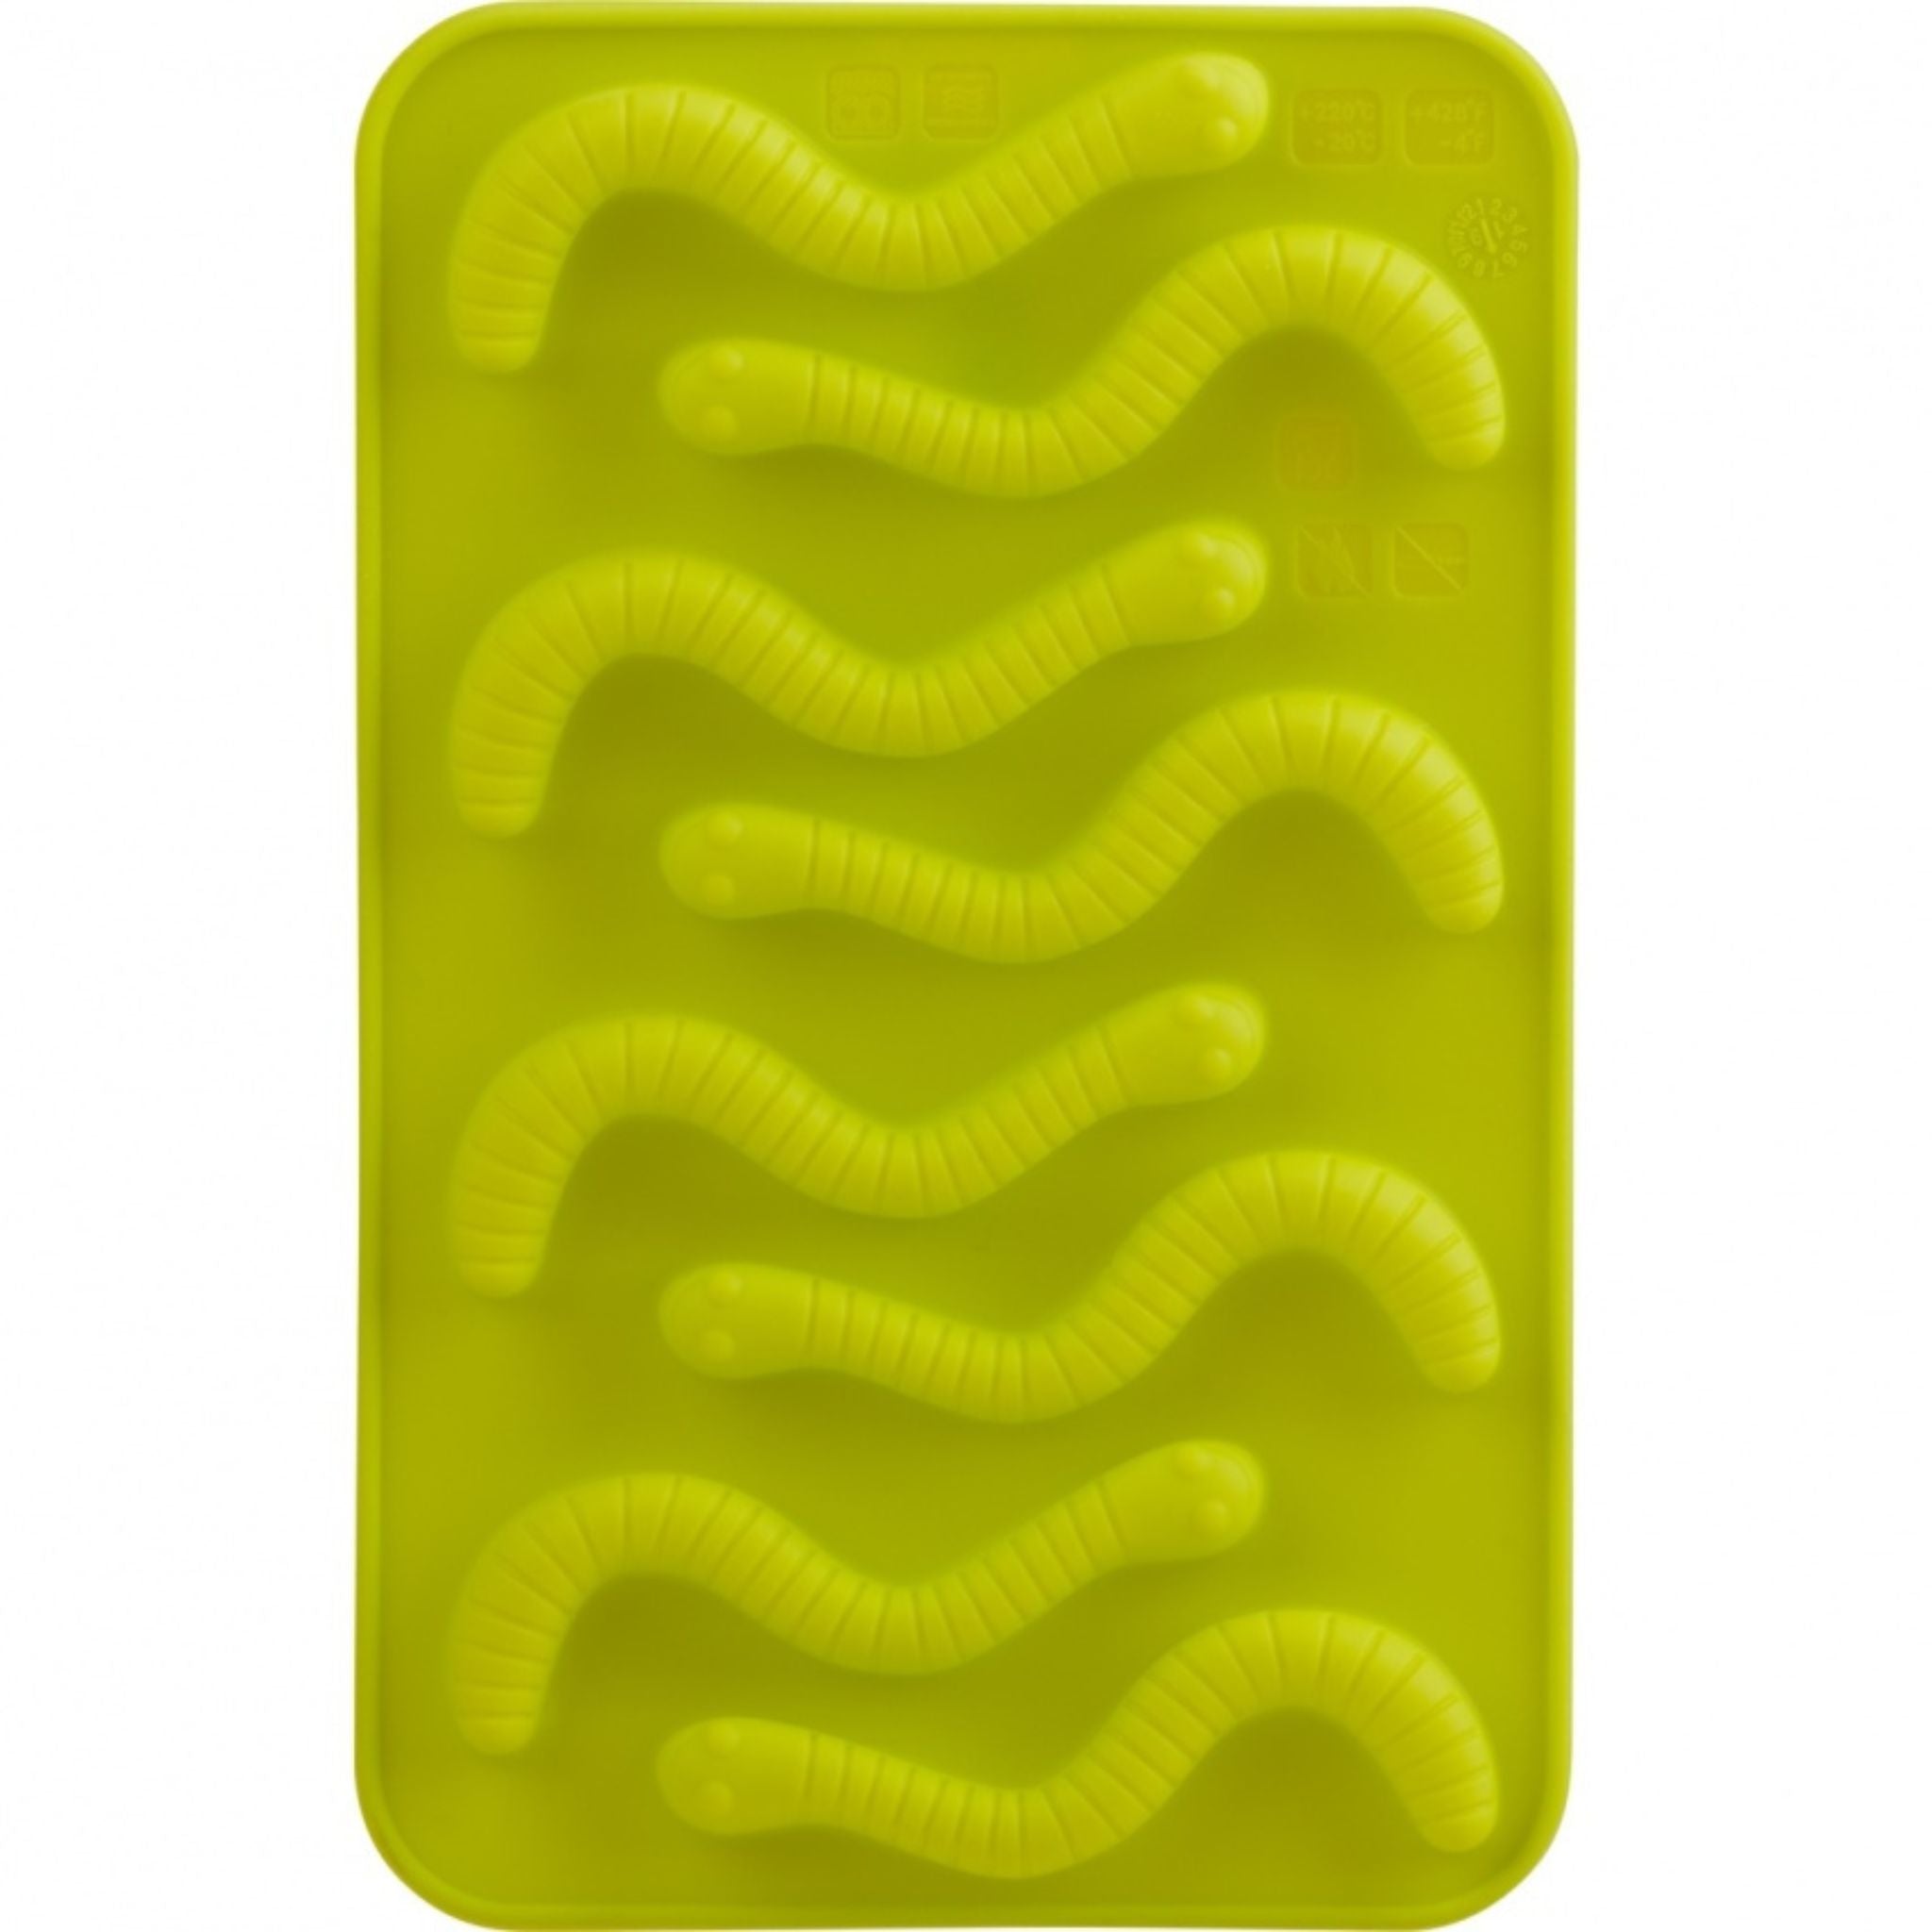 https://www.honeycombkitchenshop.com/cdn/shop/files/trudeau-choclate-mold-gummy-worms.jpg?v=1693324198